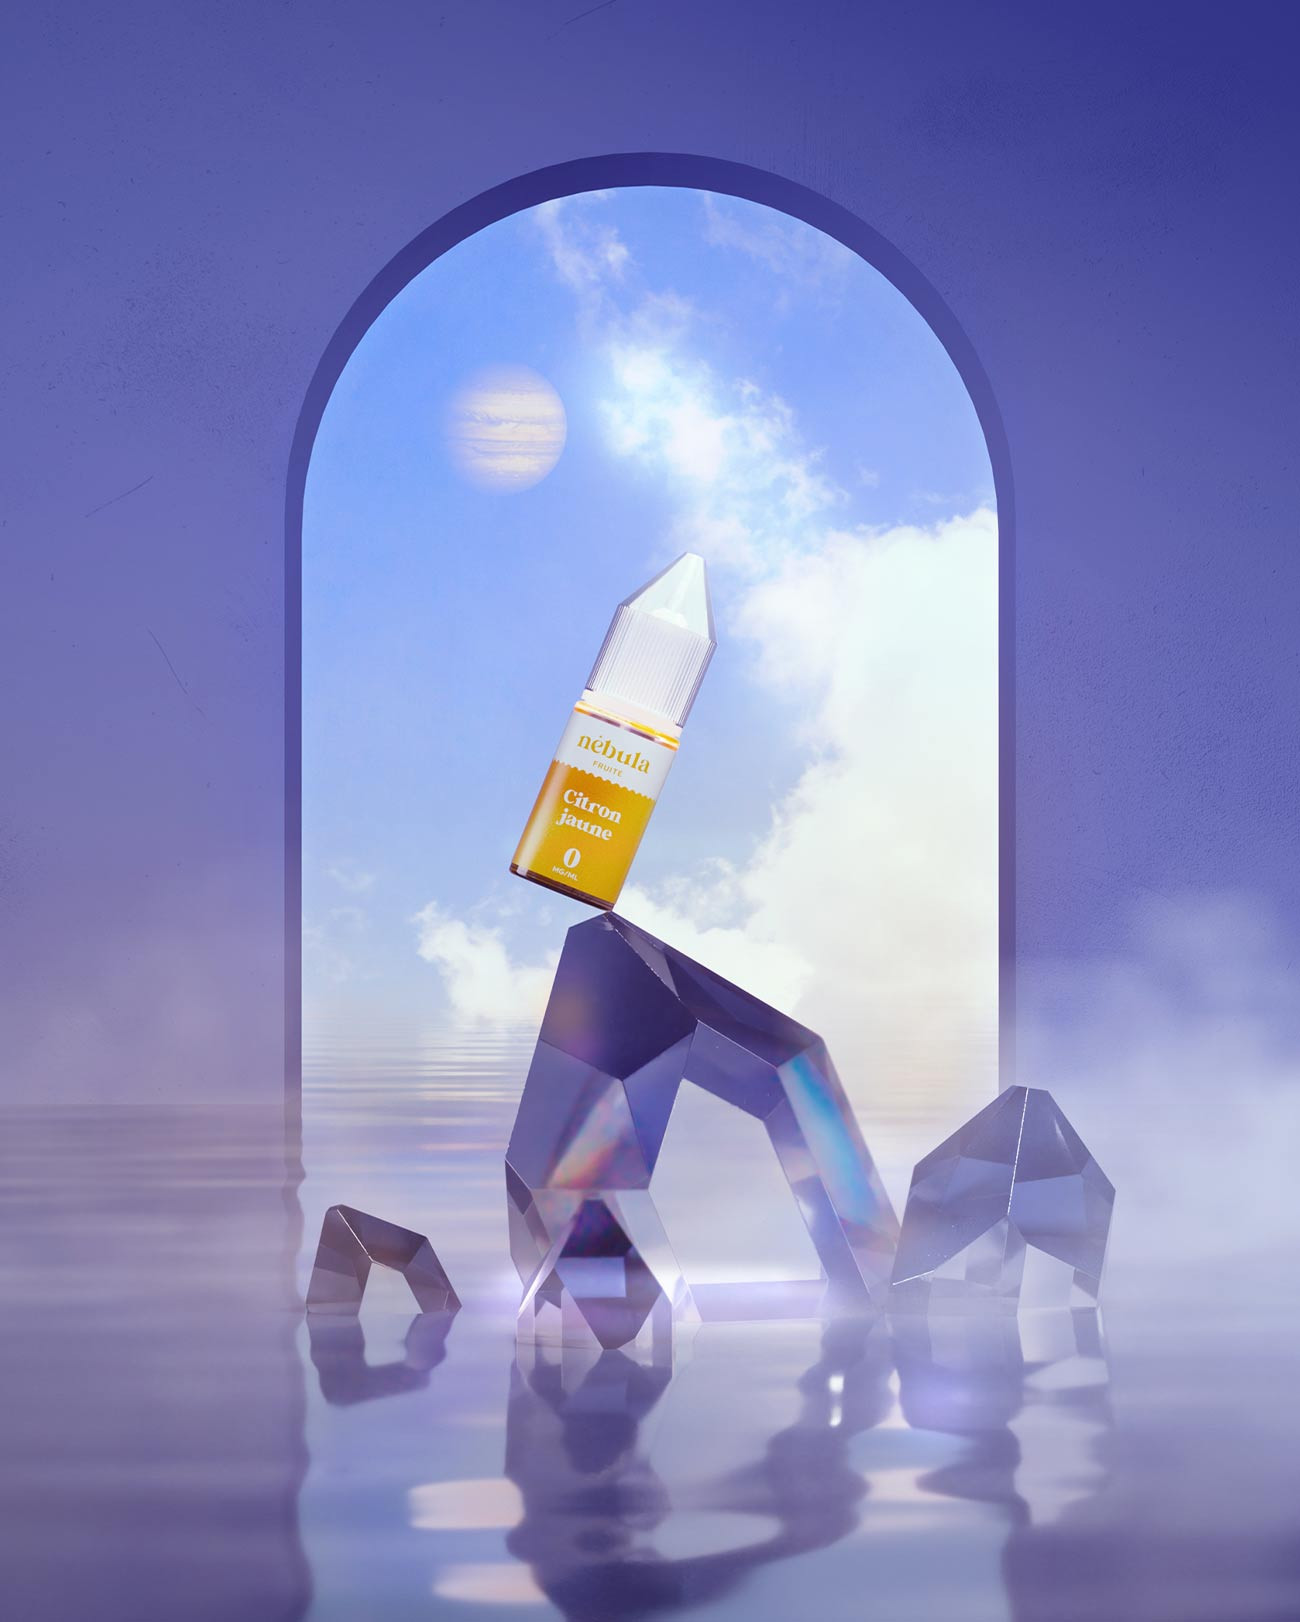 E-liquide 10 ml pour cigarette électronique Nébula parfum citron jaune